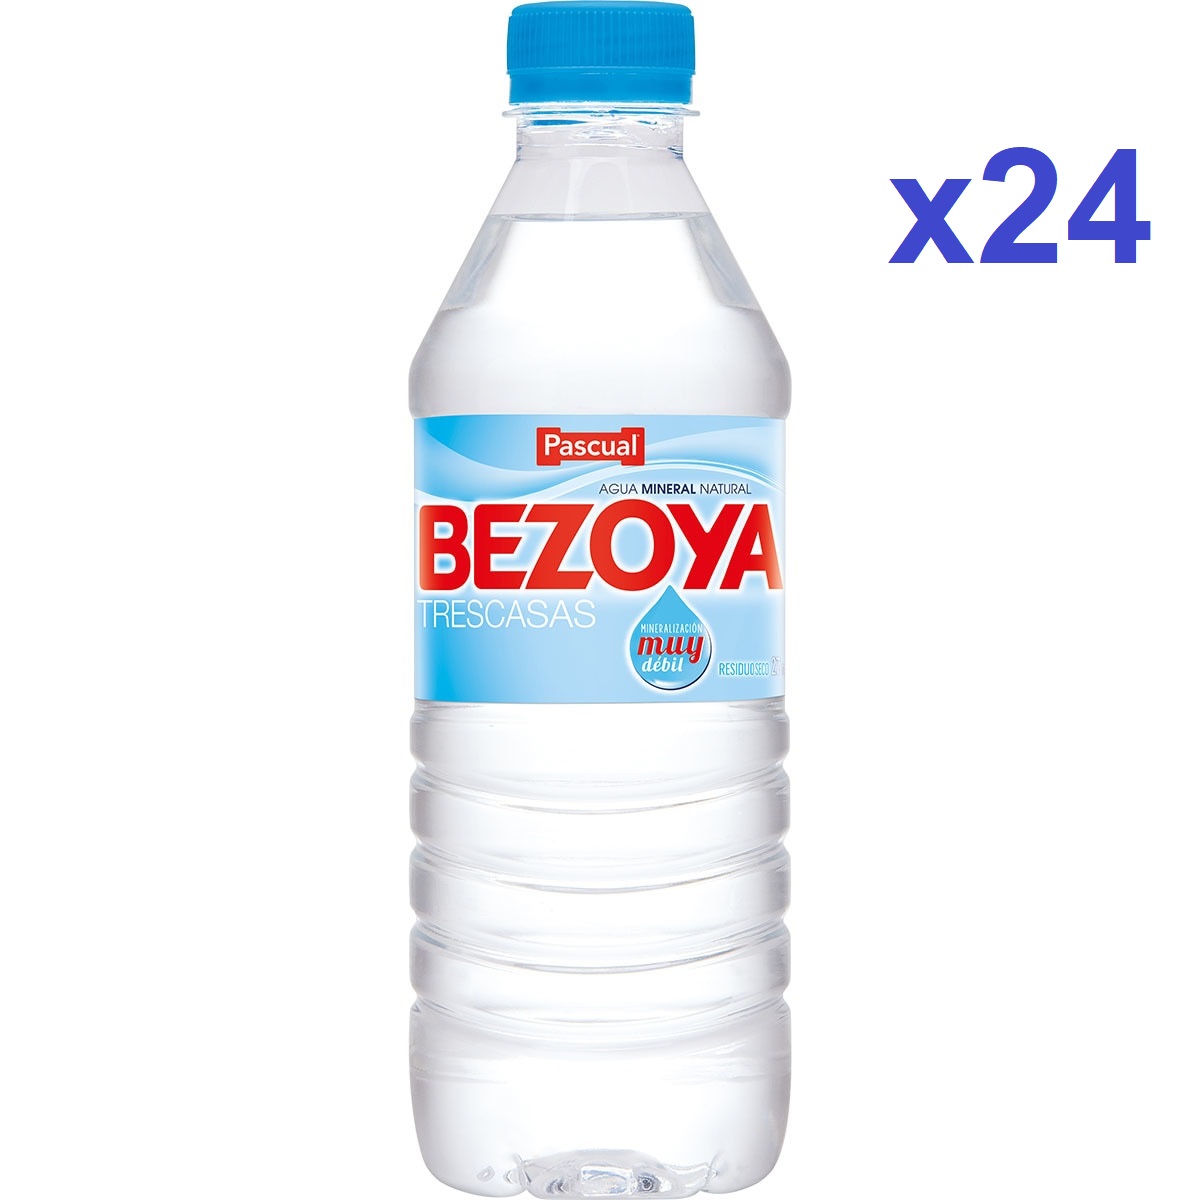 10 Años navegando juntos - Agua mineral natural Bezoya